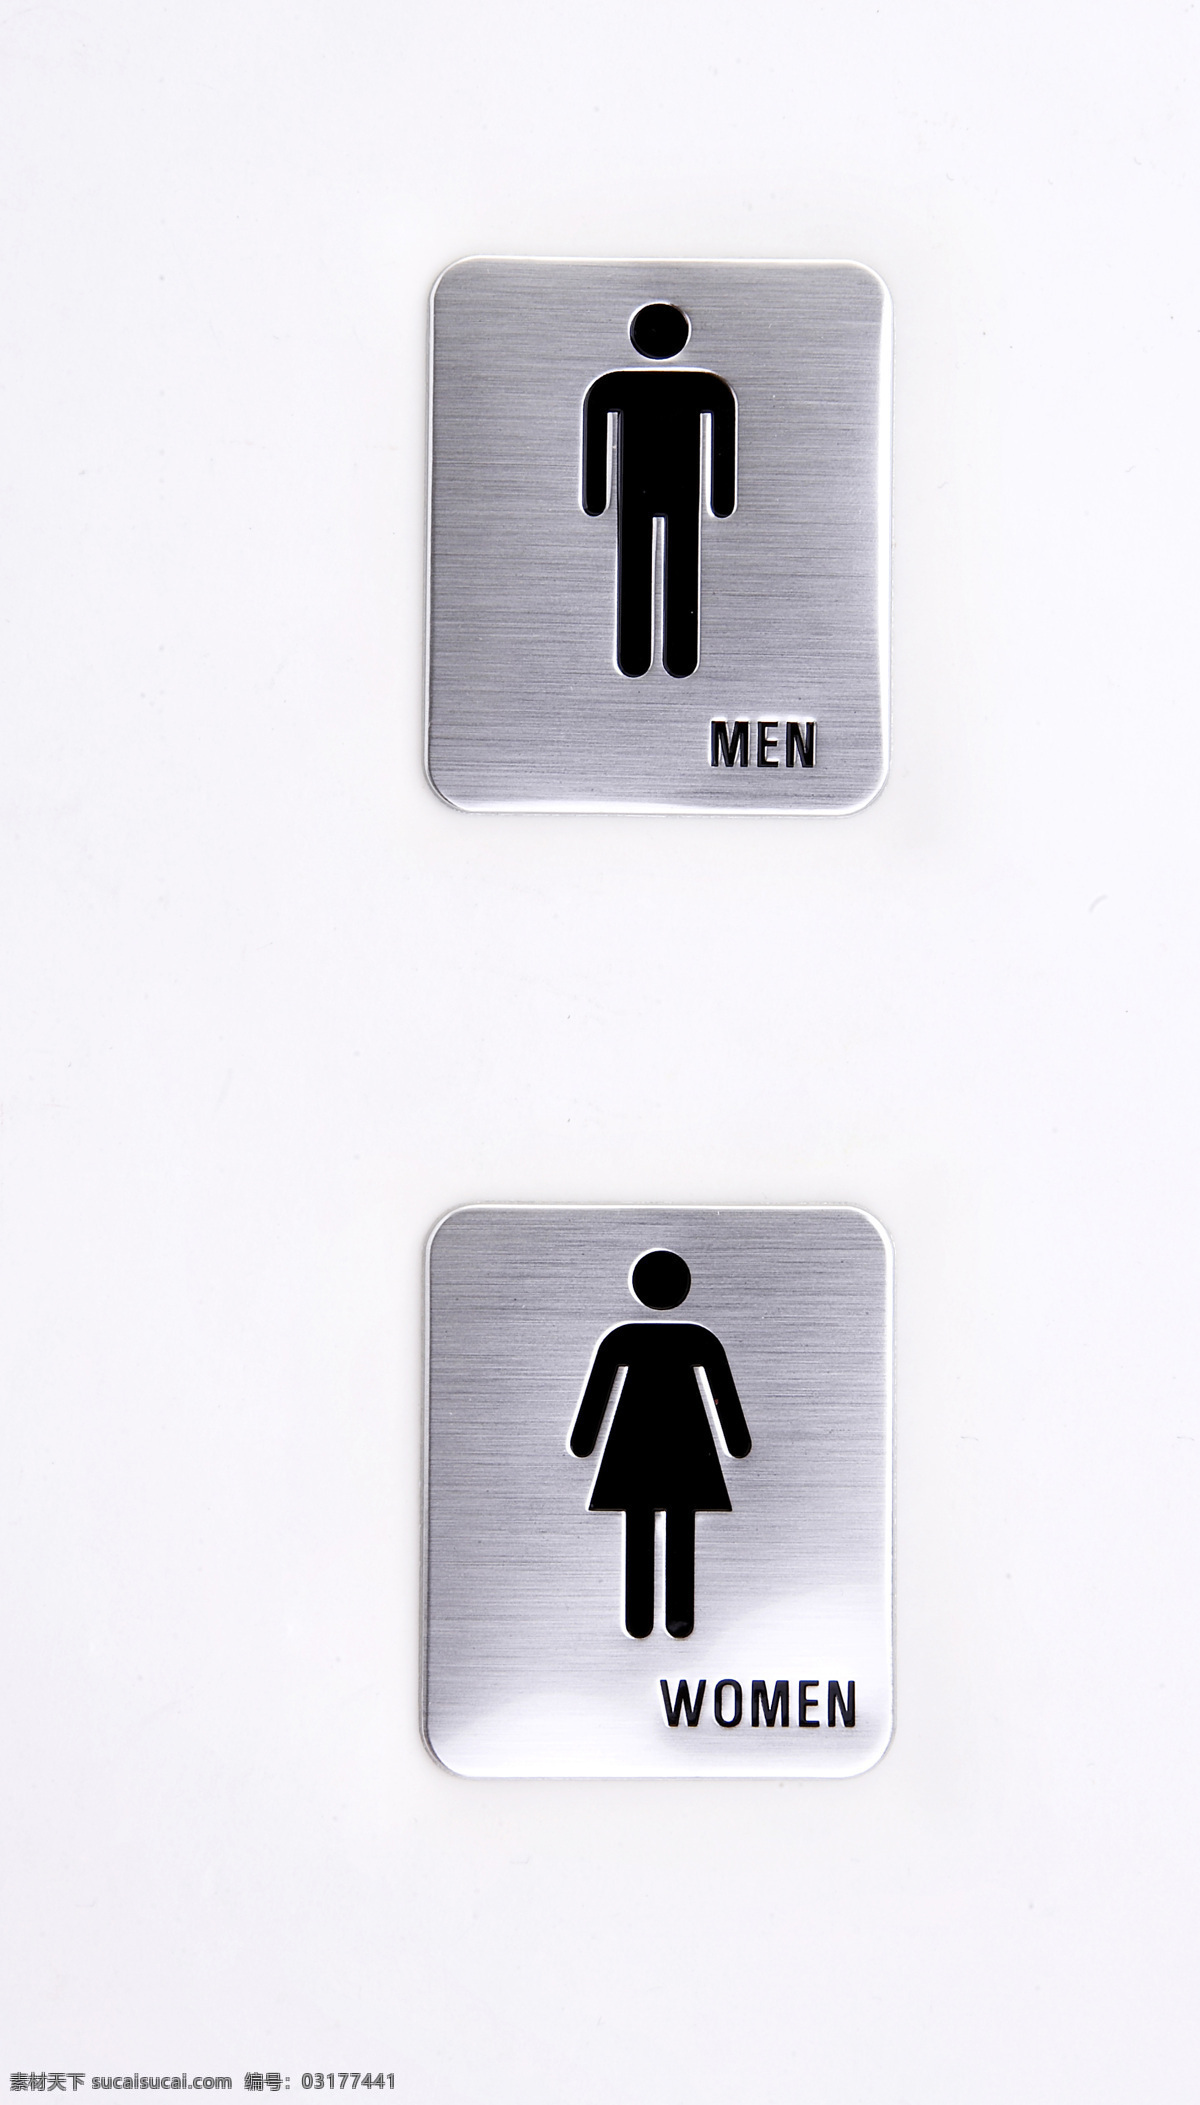 厕所 指示牌 标识牌 厕所指示牌 生活百科 生活素材 男厕 女厕 金属指示牌 psd源文件